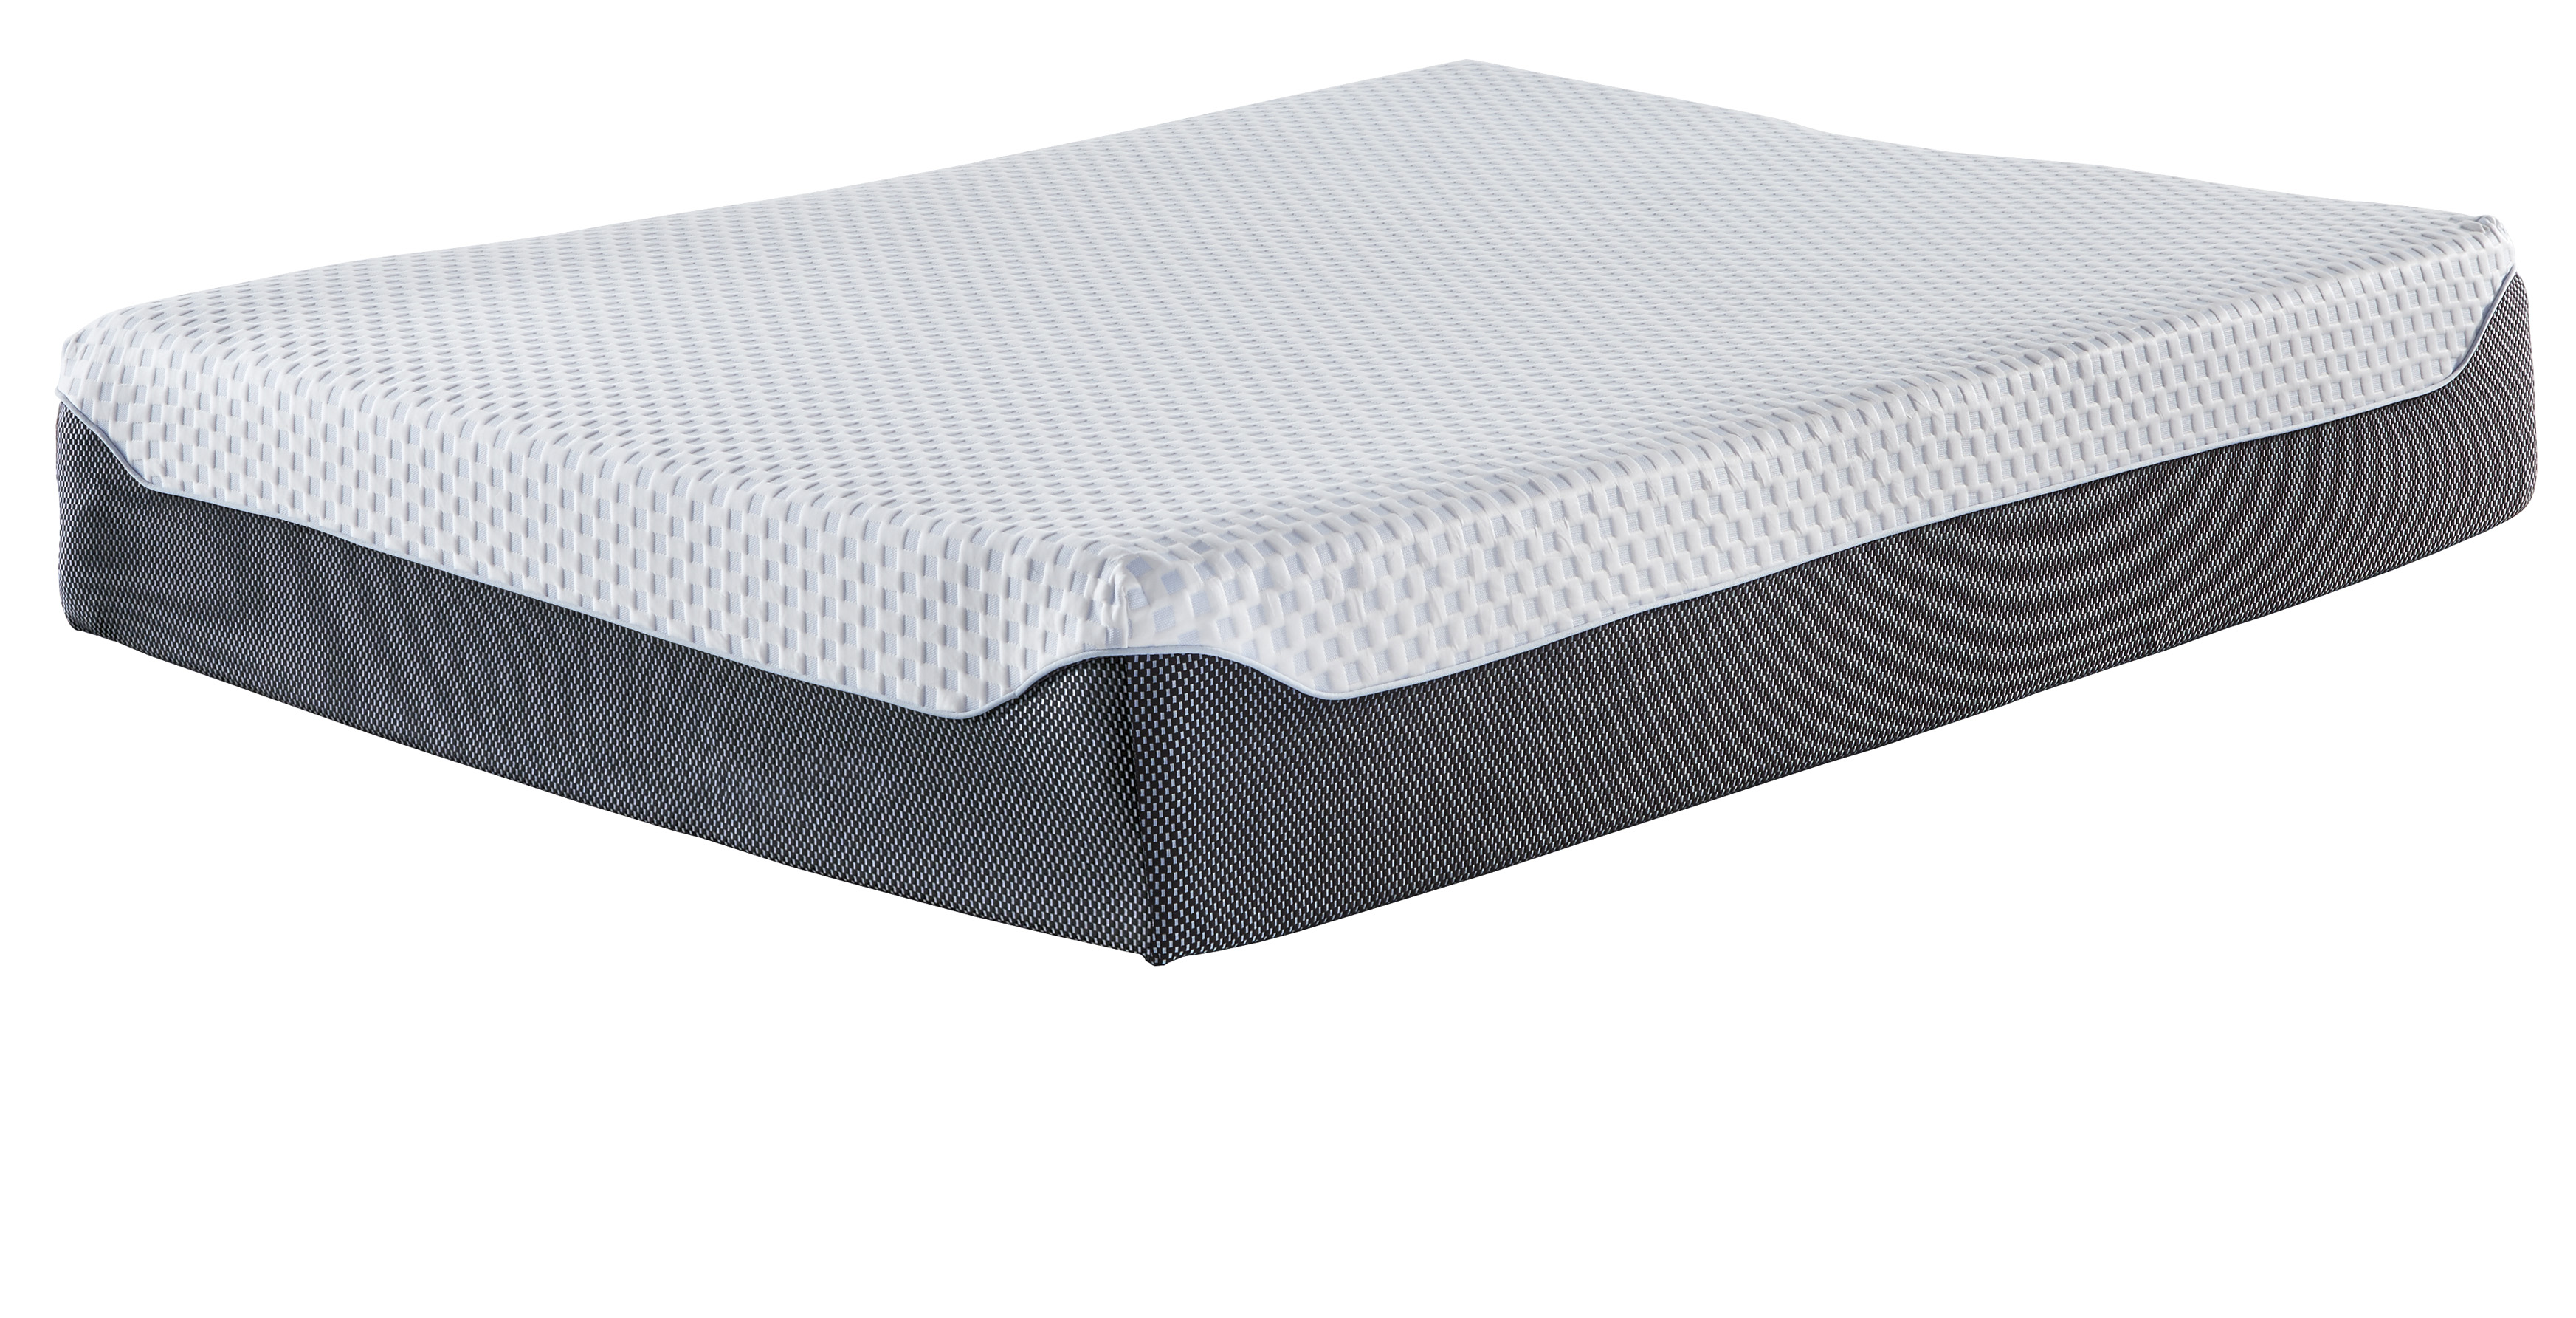 ashley sleep memory foam queen size mattress